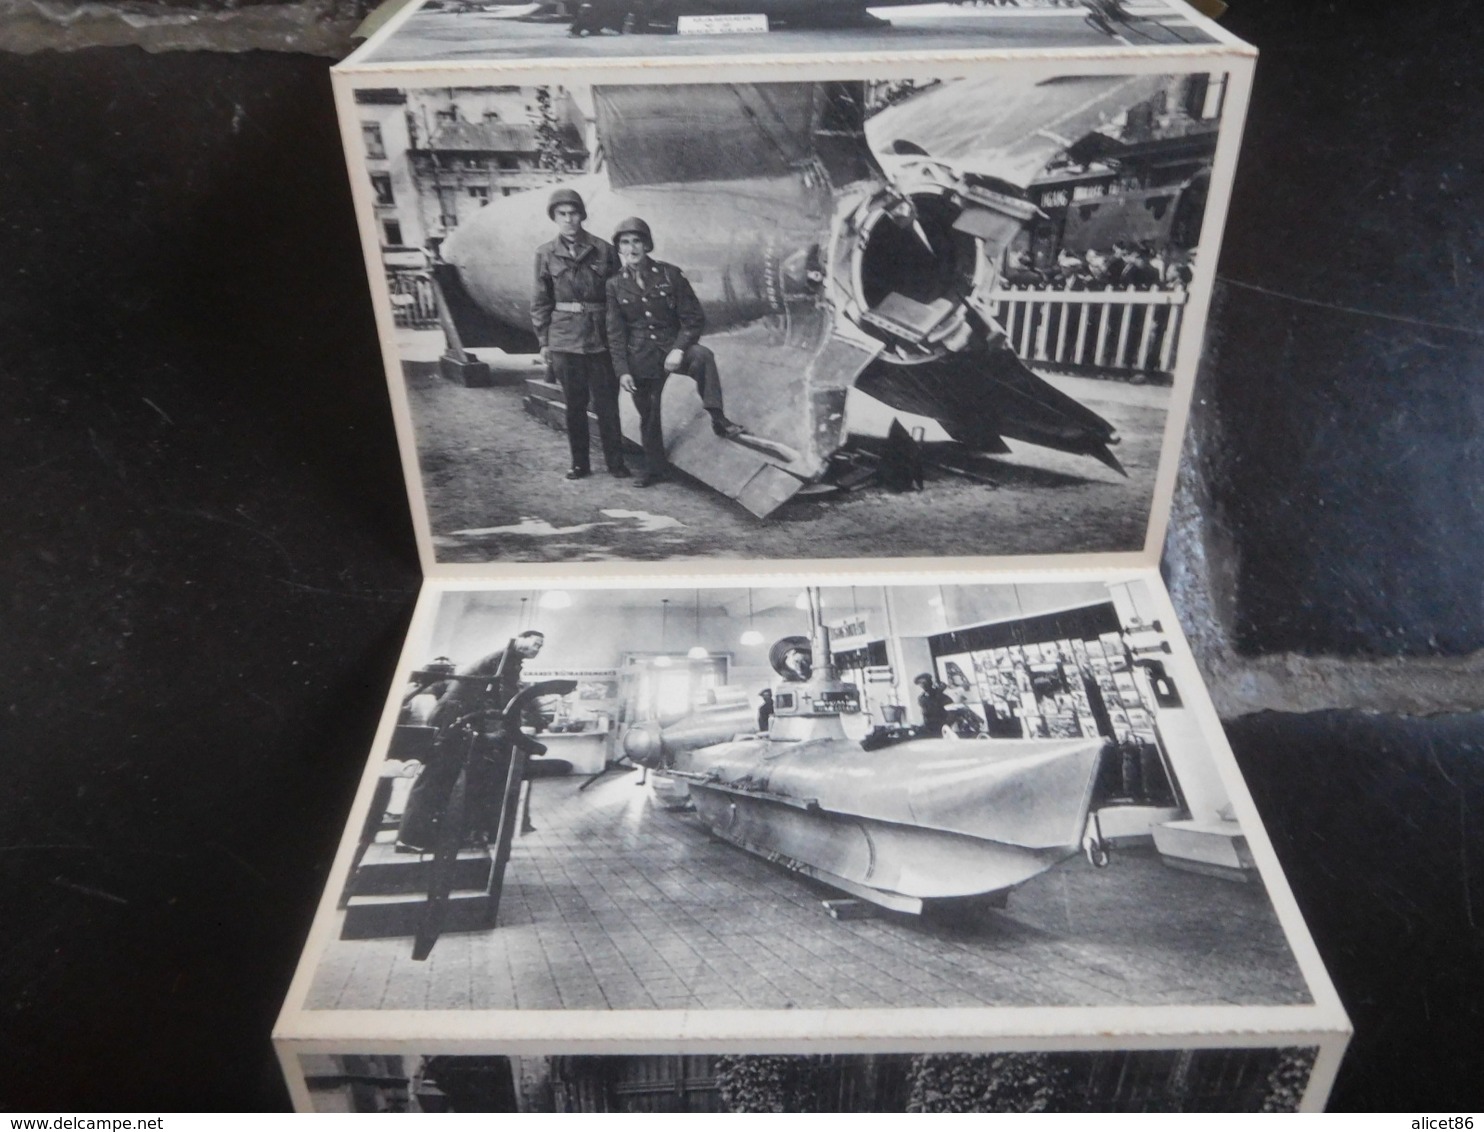 War Exhibition June 1945 Antwerp 10 Views Cards V1 / V2 / Spitfire / Submarine V3 .... - Guerre 1939-45